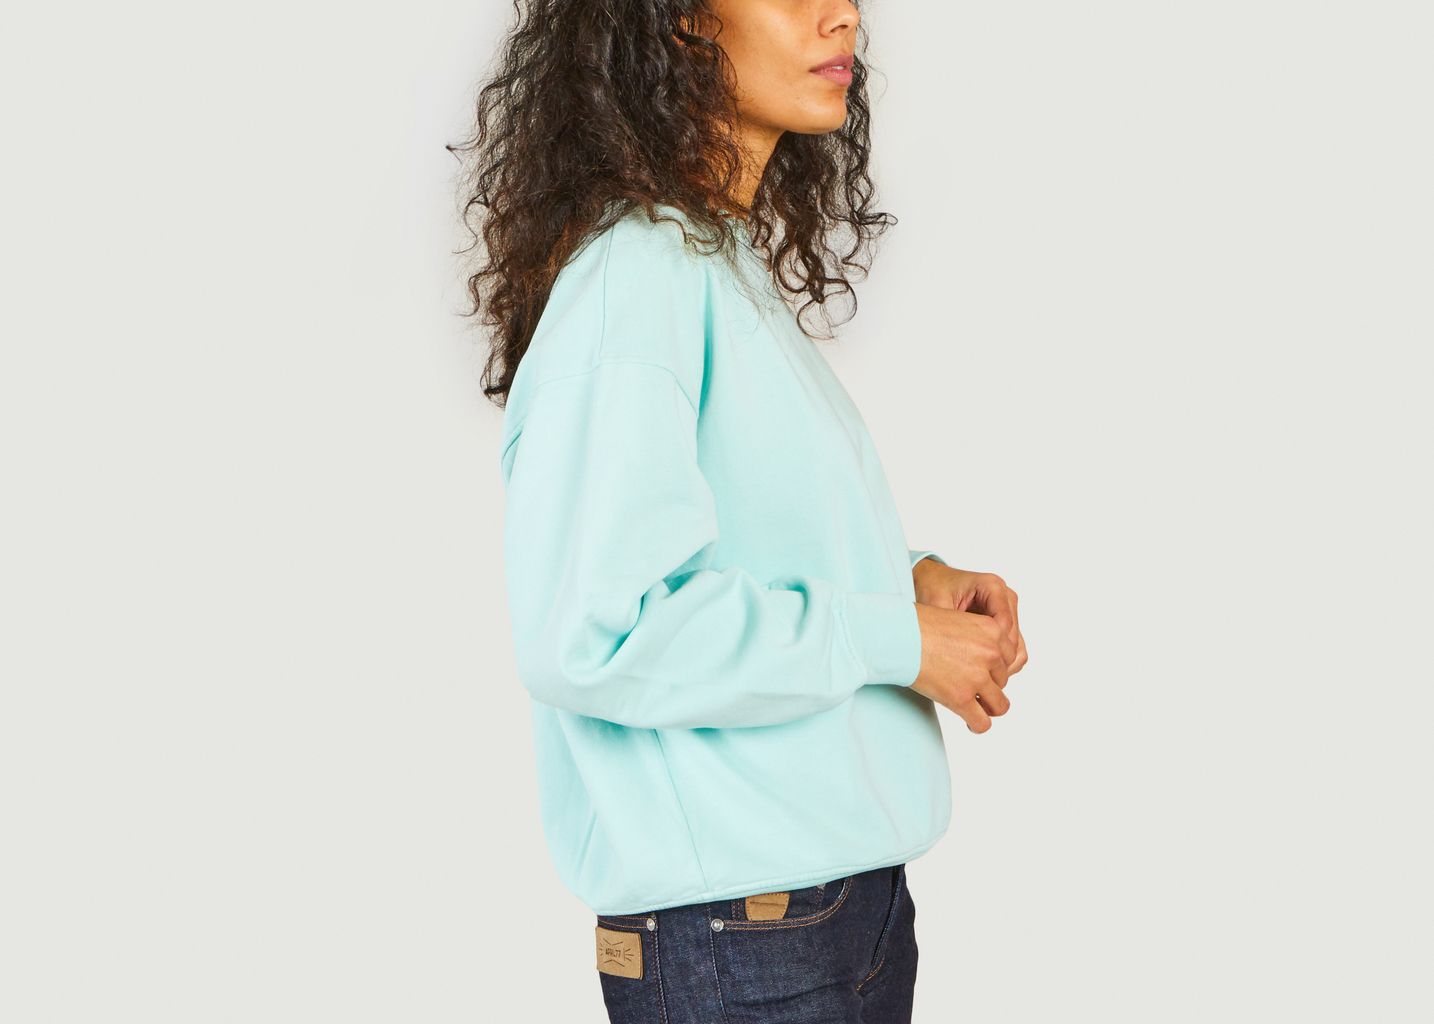 Sweatshirt en coton bio - Colorful Standard